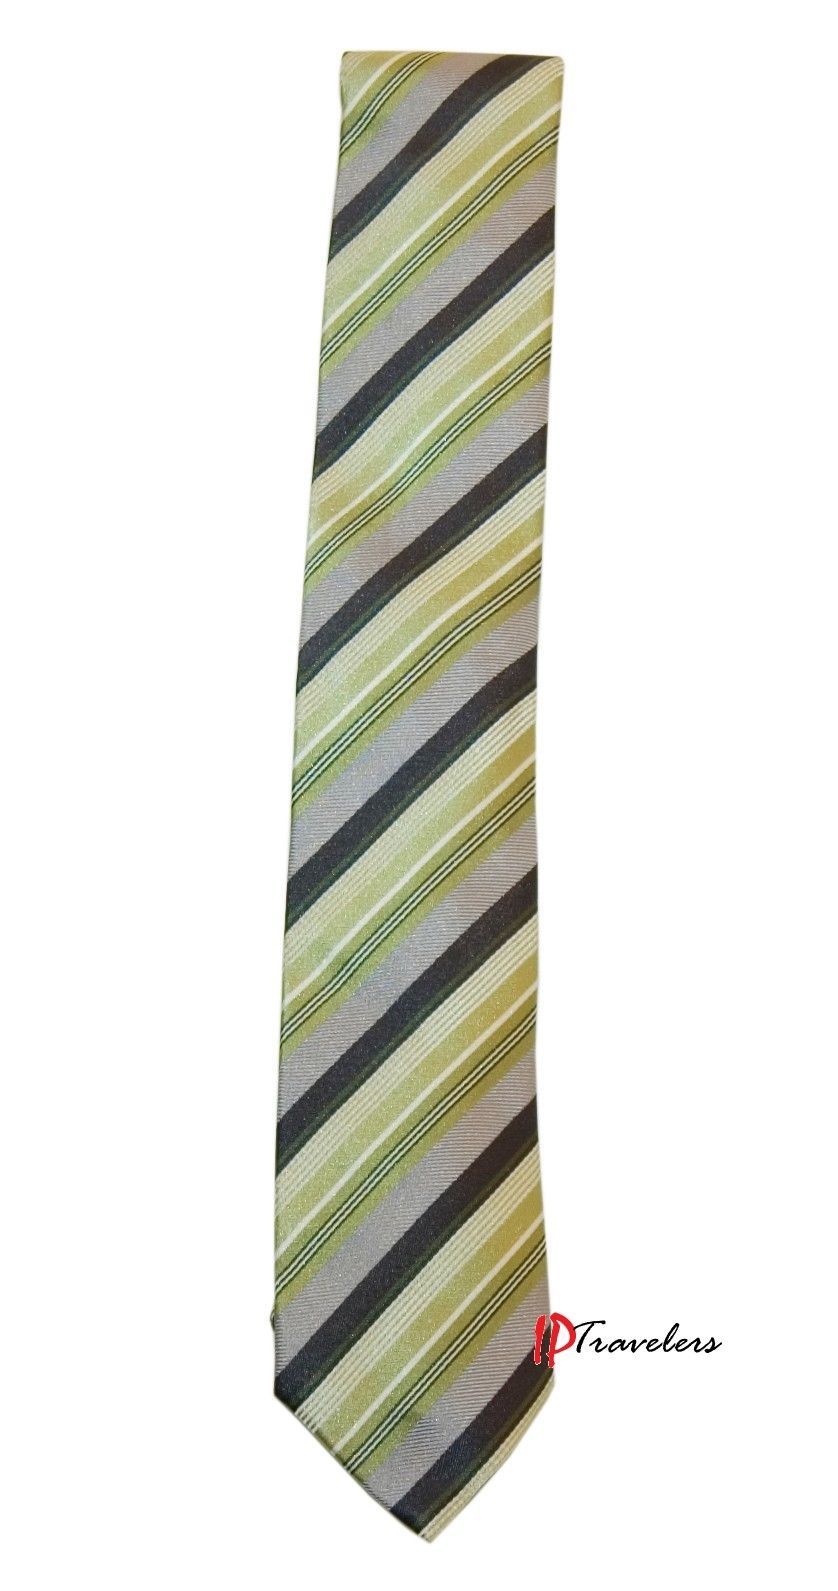 Geoffrey Beene Men's Neck Tie Green, Gray, Black and White Stripes 100% Silk $55 - $22.00